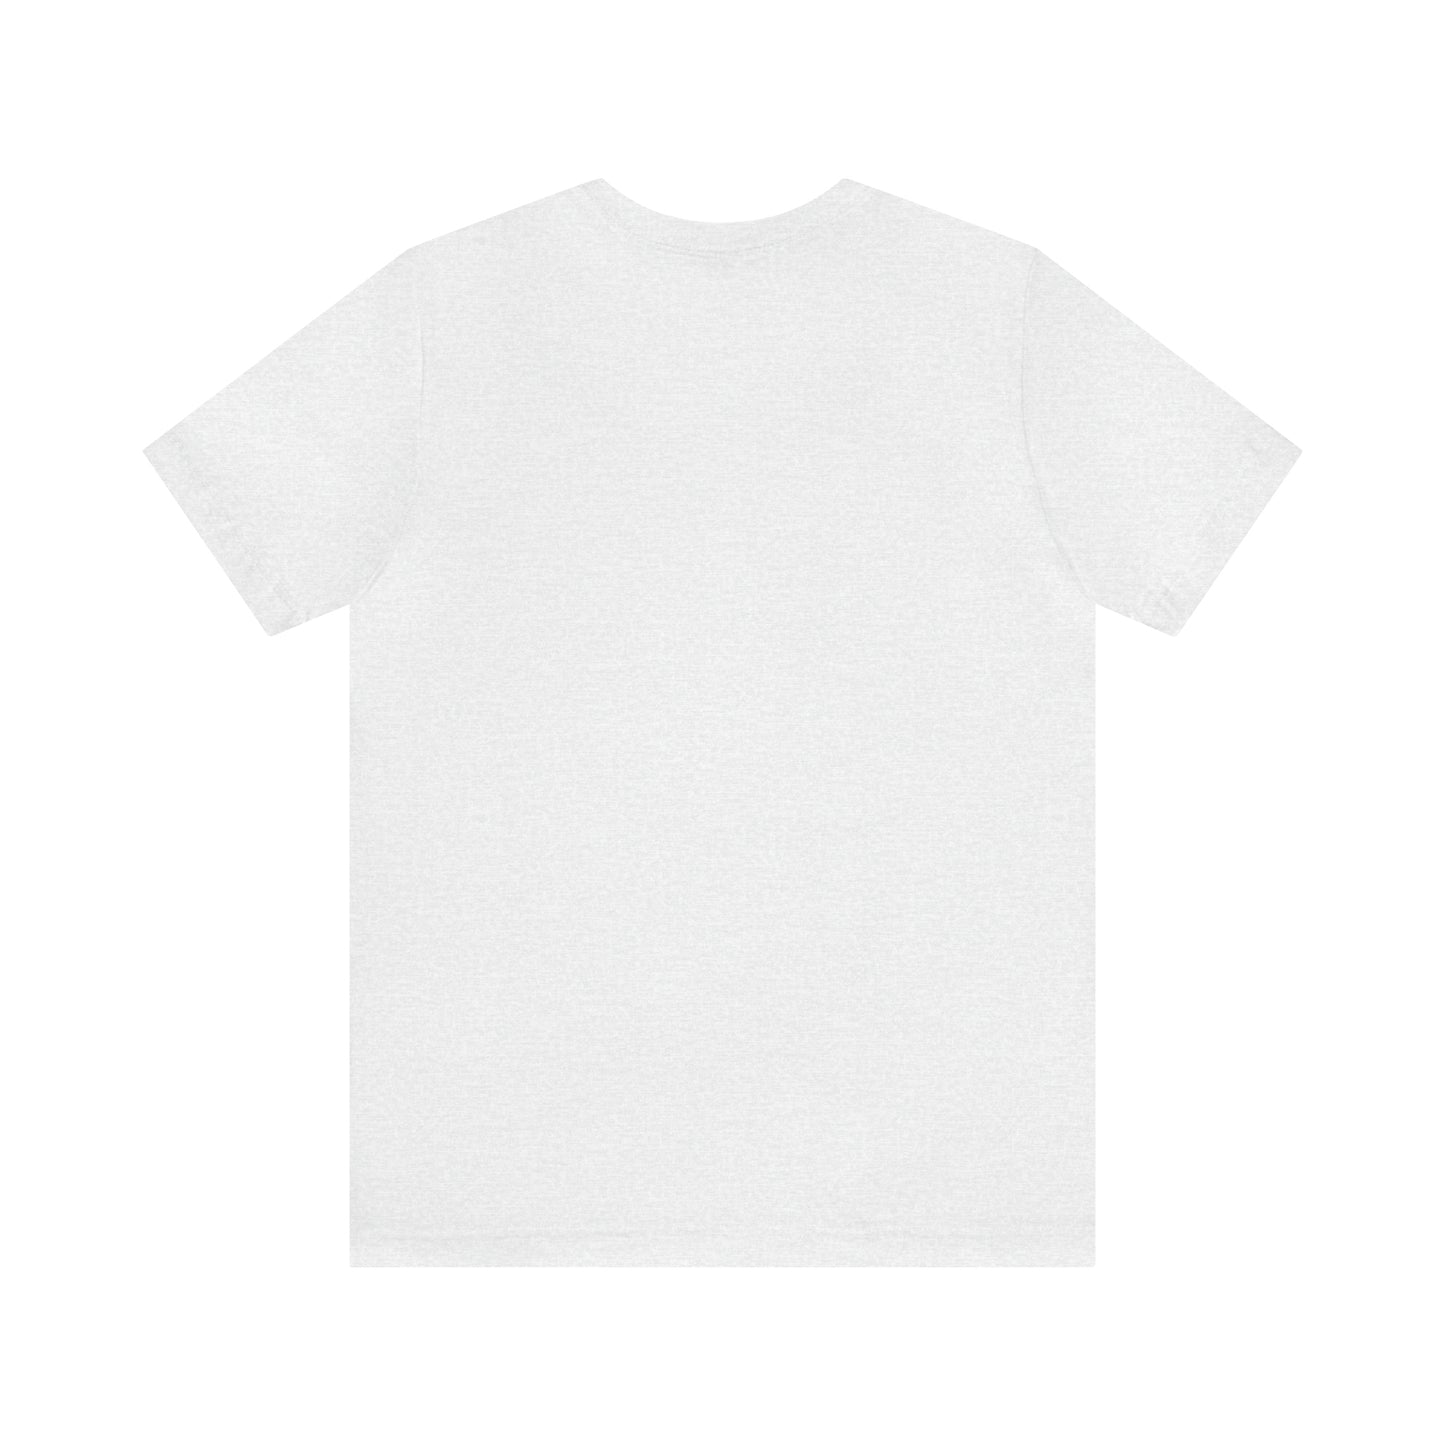 Natick, Mass Pickleball Short Sleeve T-Shirt